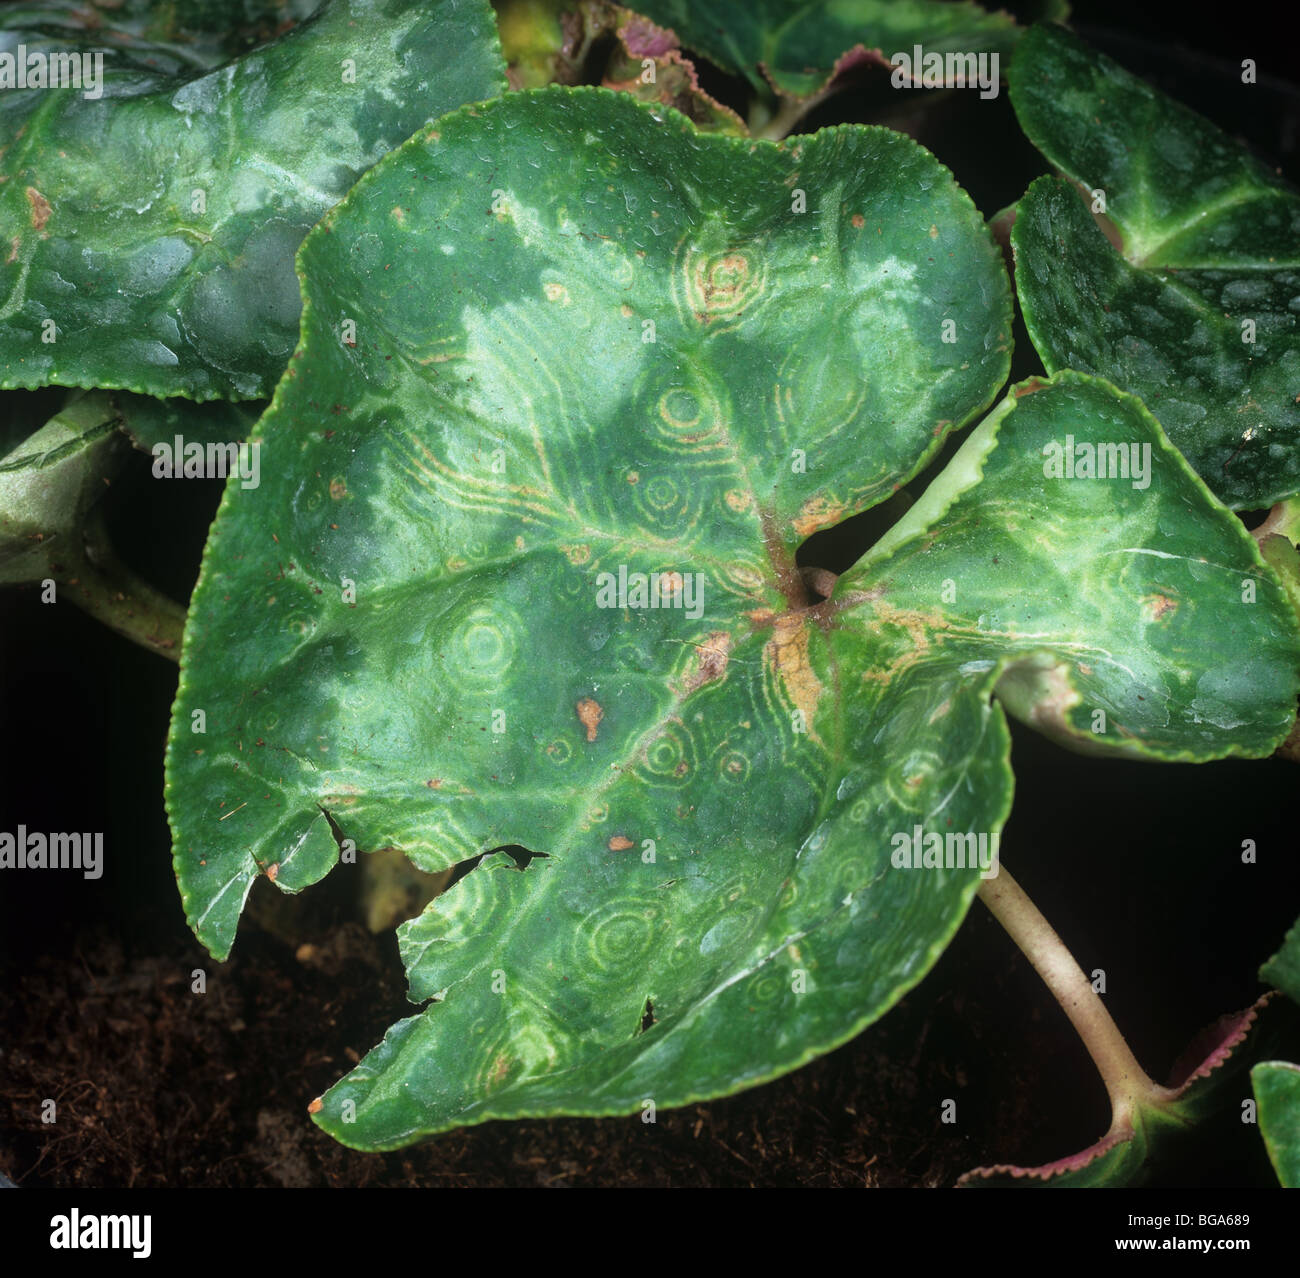 Alpenveilchen Ringspot Virus entdeckt Tomate verwelken Virus Symptome auf Alpenveilchen Blätter Stockfoto